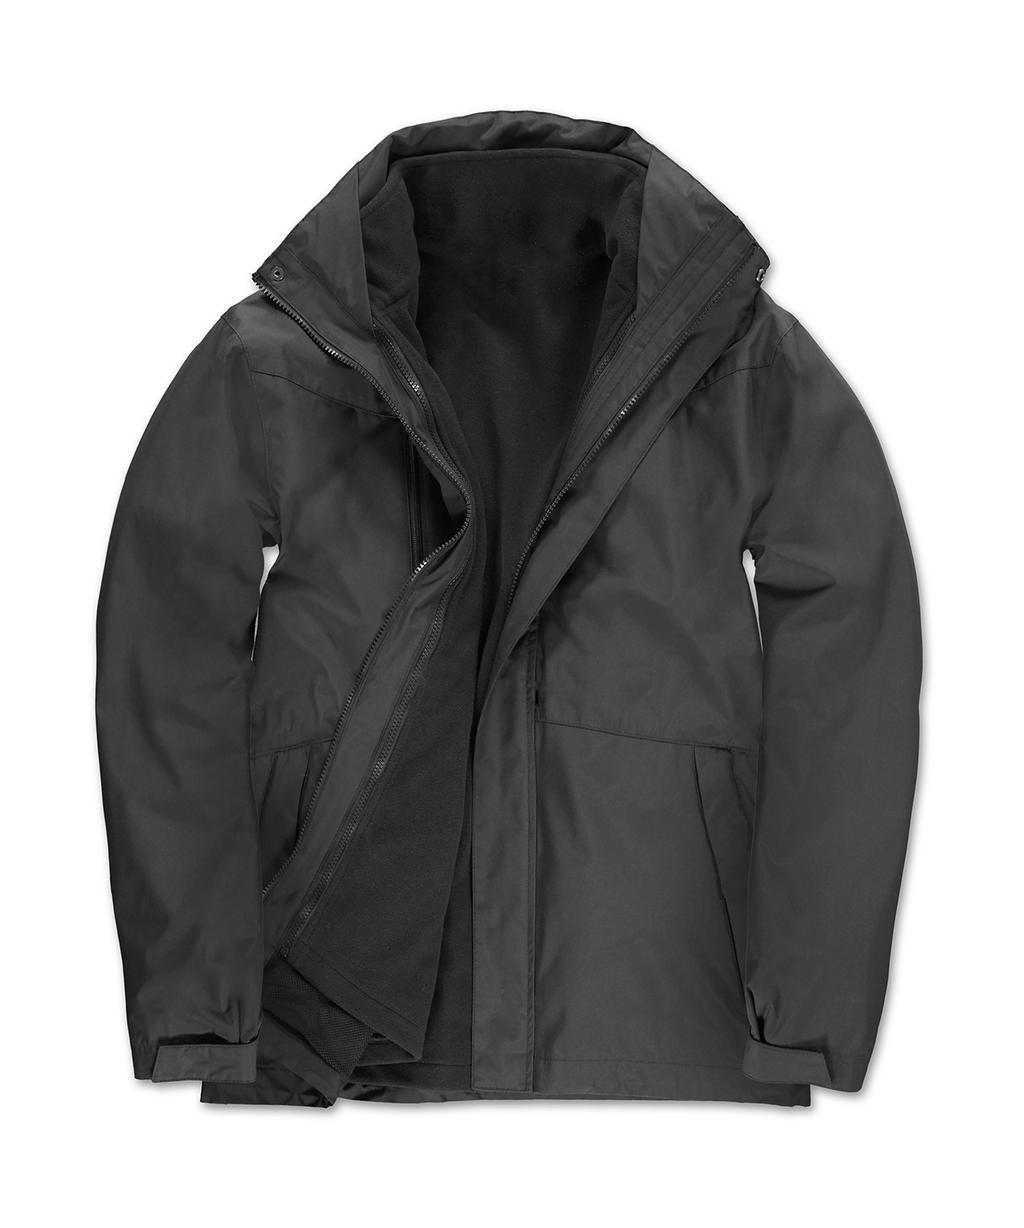  Corporate 3-in-1 Jacket in Farbe Dark Grey